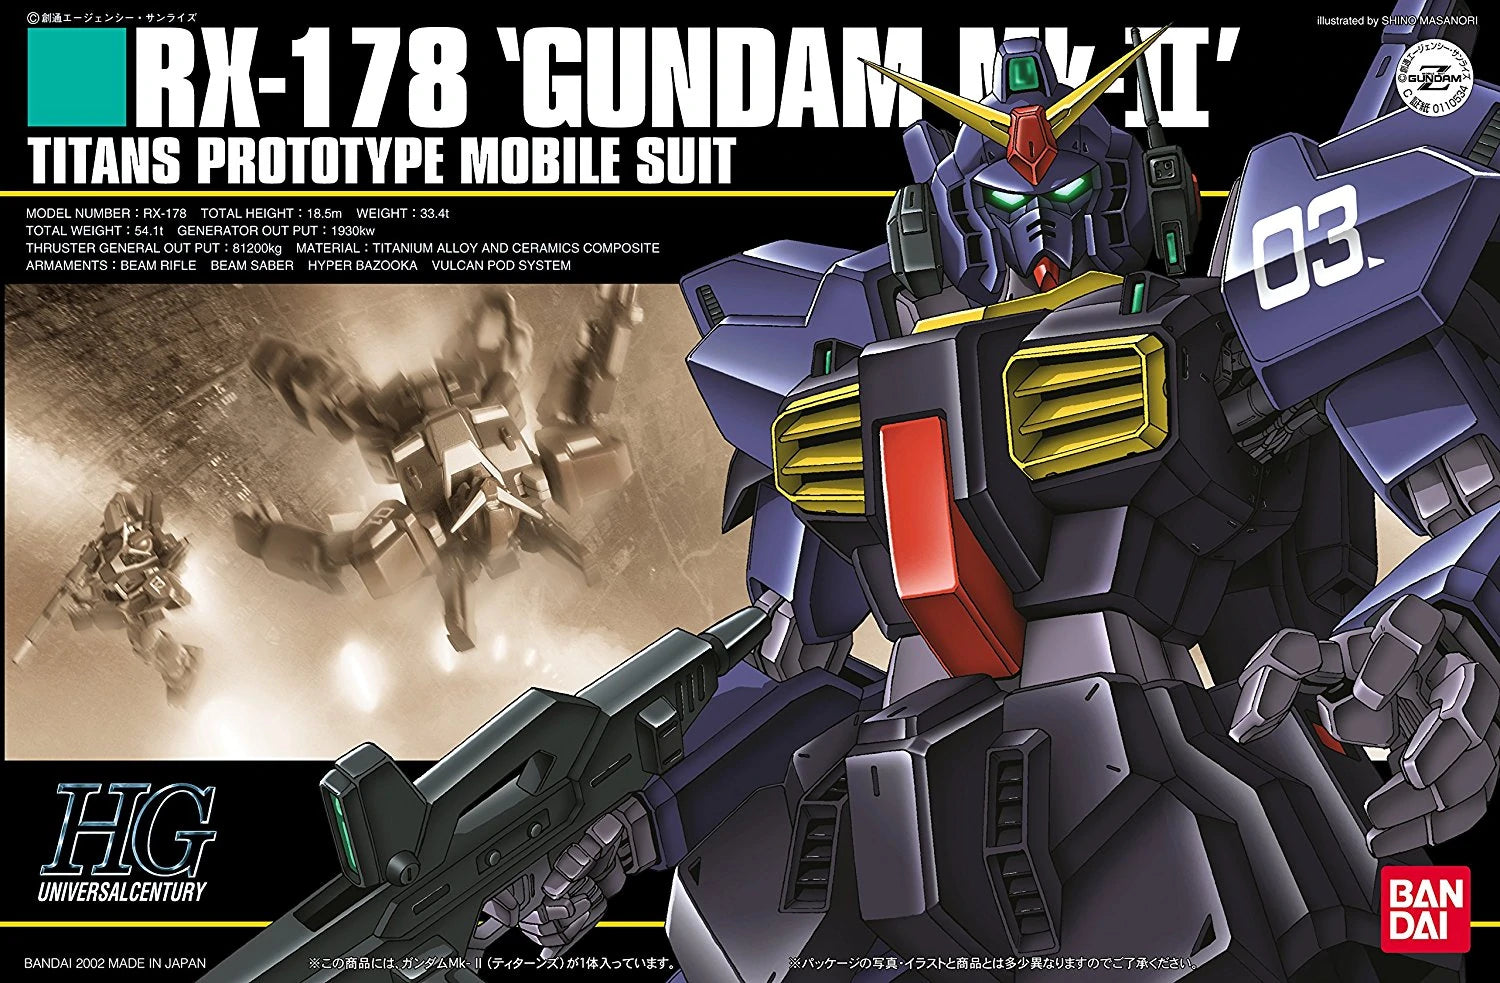 HGUC RX-178 Gundam MK-II (Titans) (1/144th Scale) Plastic Gundam